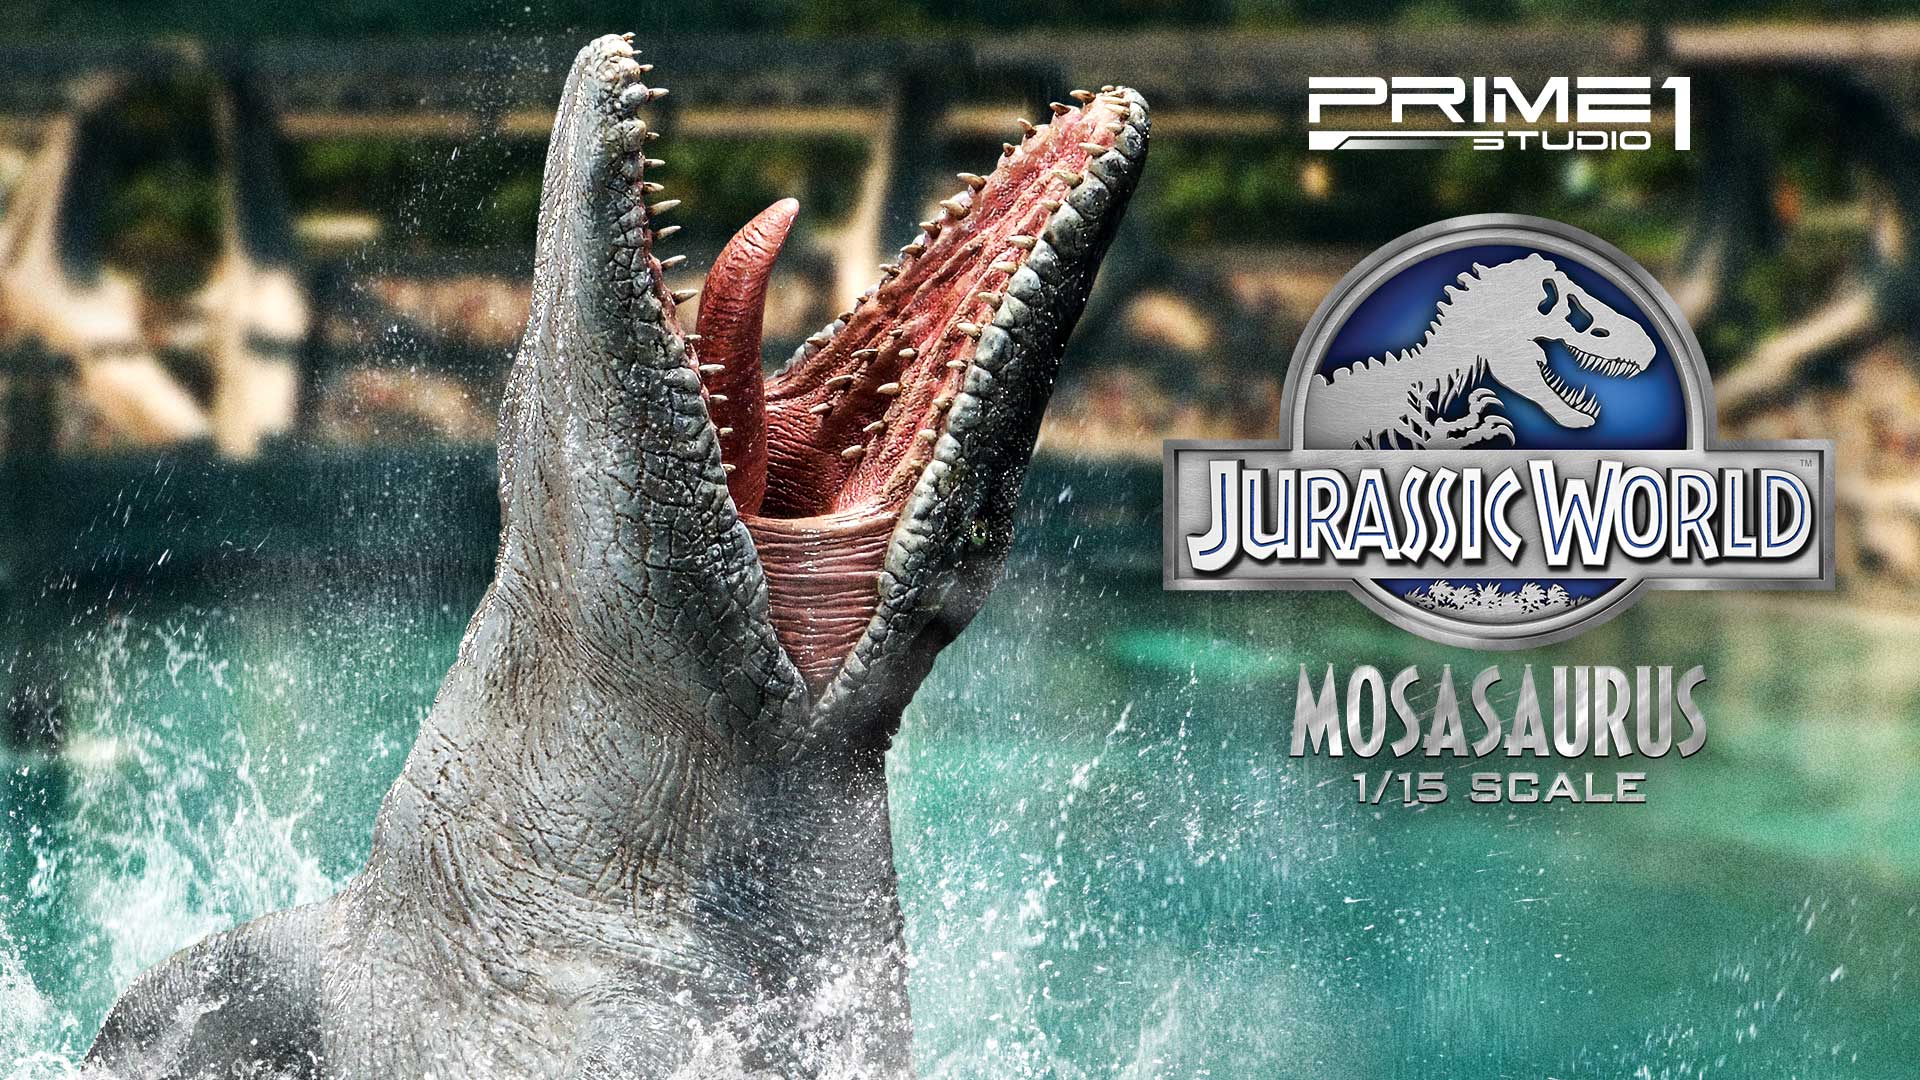 ジュラシック ワールドで絶大な存在感を放った人気恐竜 モササウルス が横幅 90cmオーバー の迫力サイズで登場 Newscast